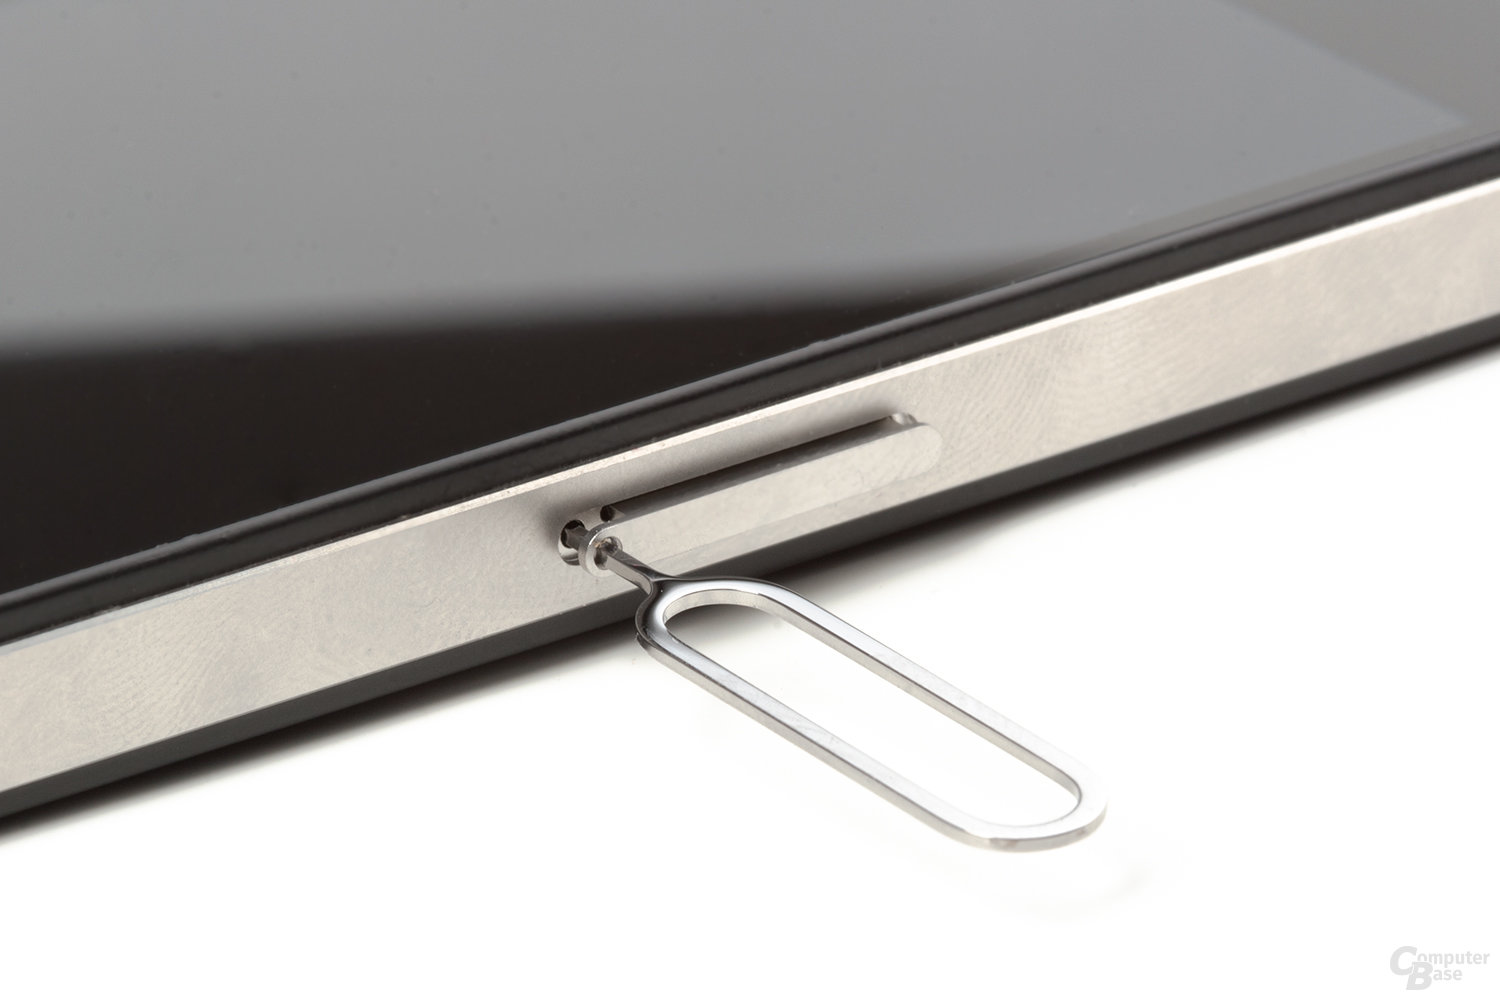 iPhone 4: Schublade für Micro SIM